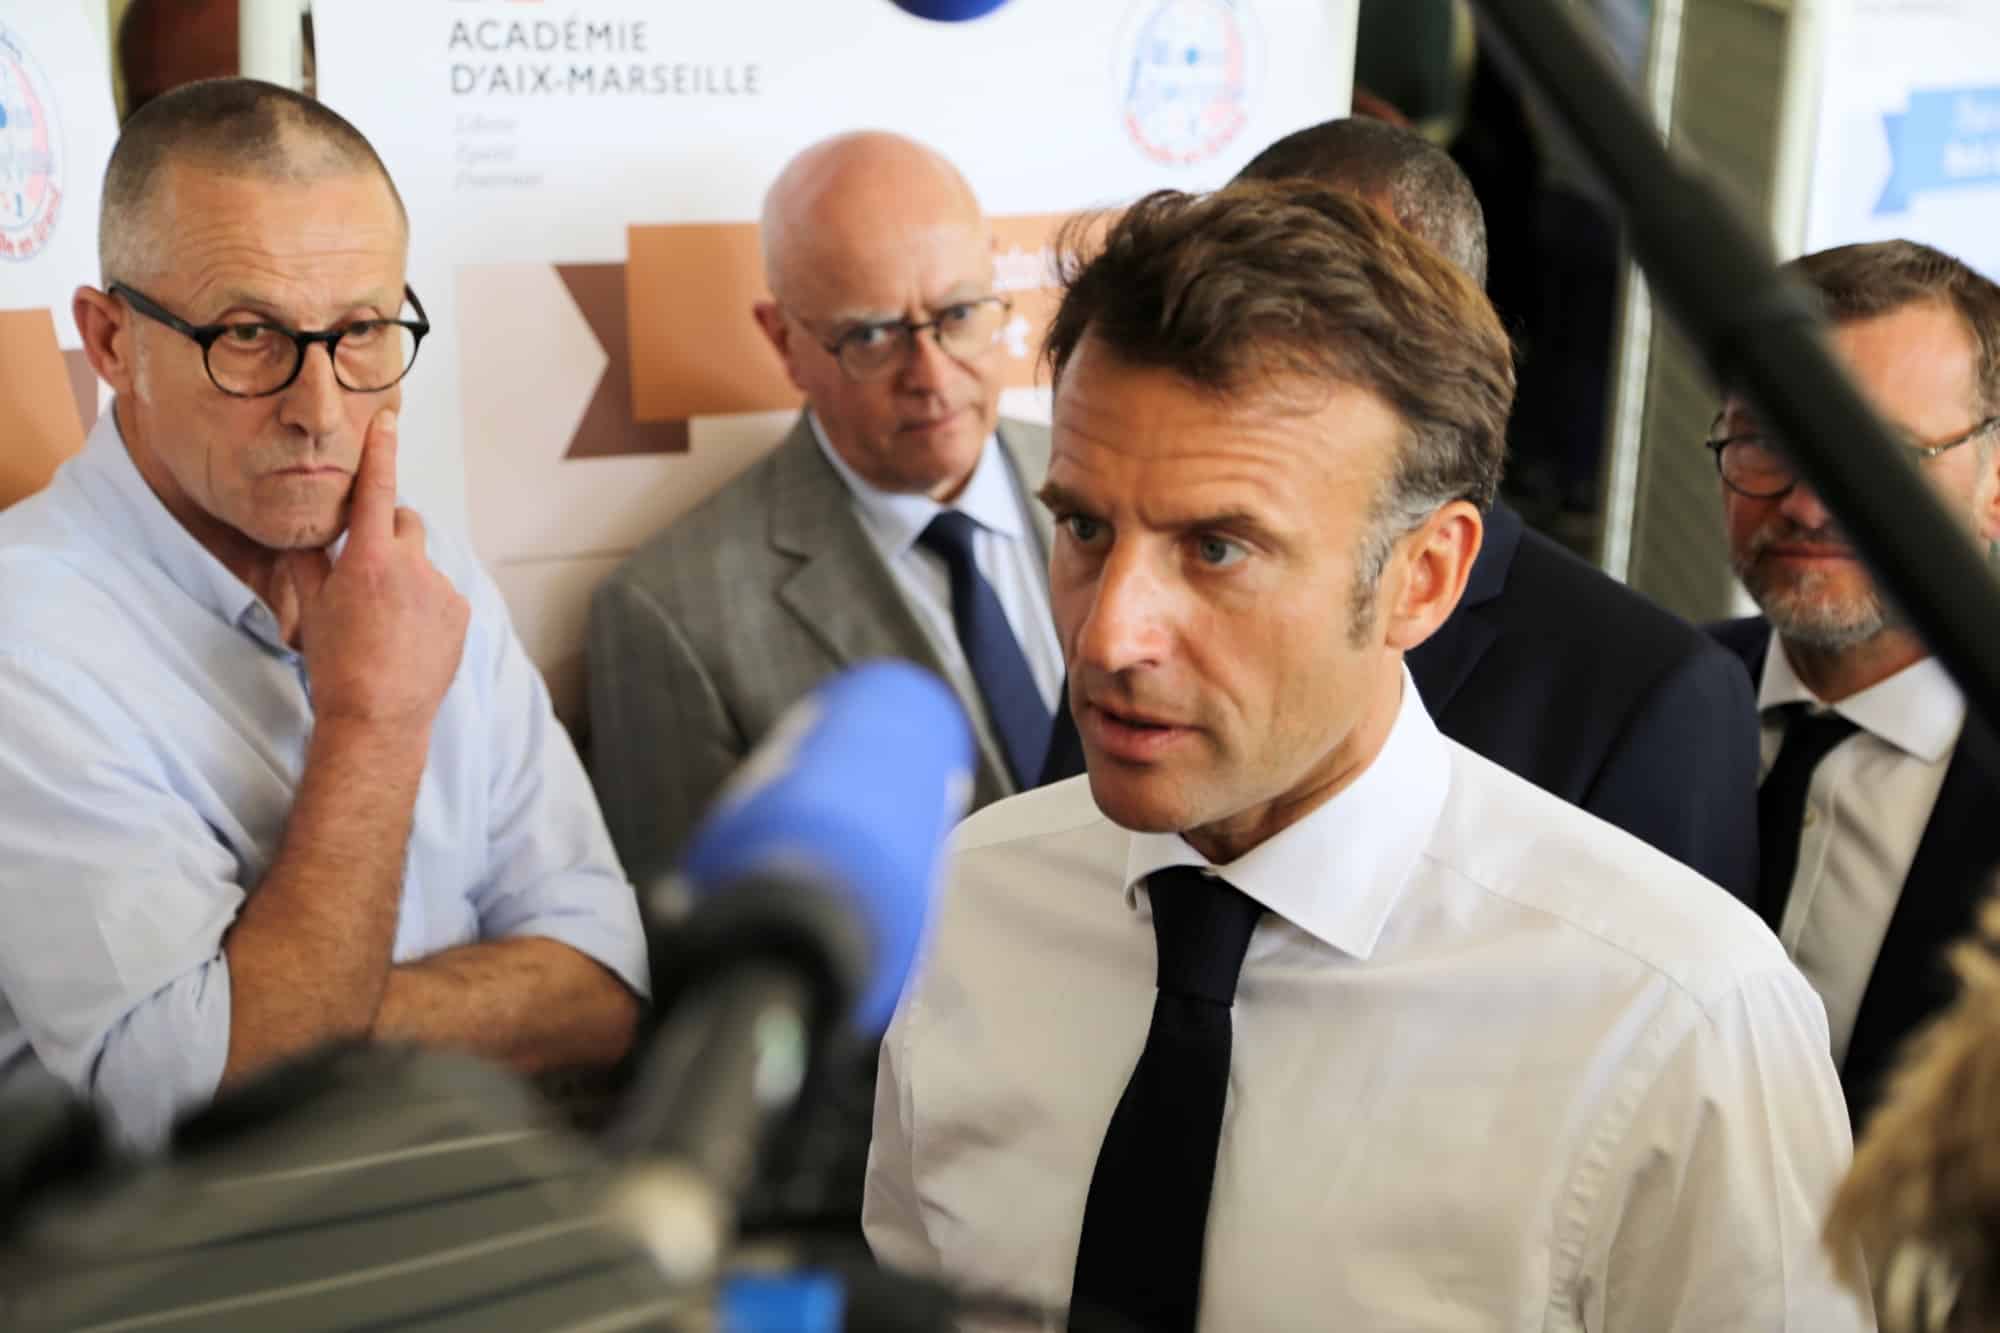 temps scolaire, Emmanuel Macron veut ouvrir un débat pour repenser le temps scolaire dans l&rsquo;année, Made in Marseille